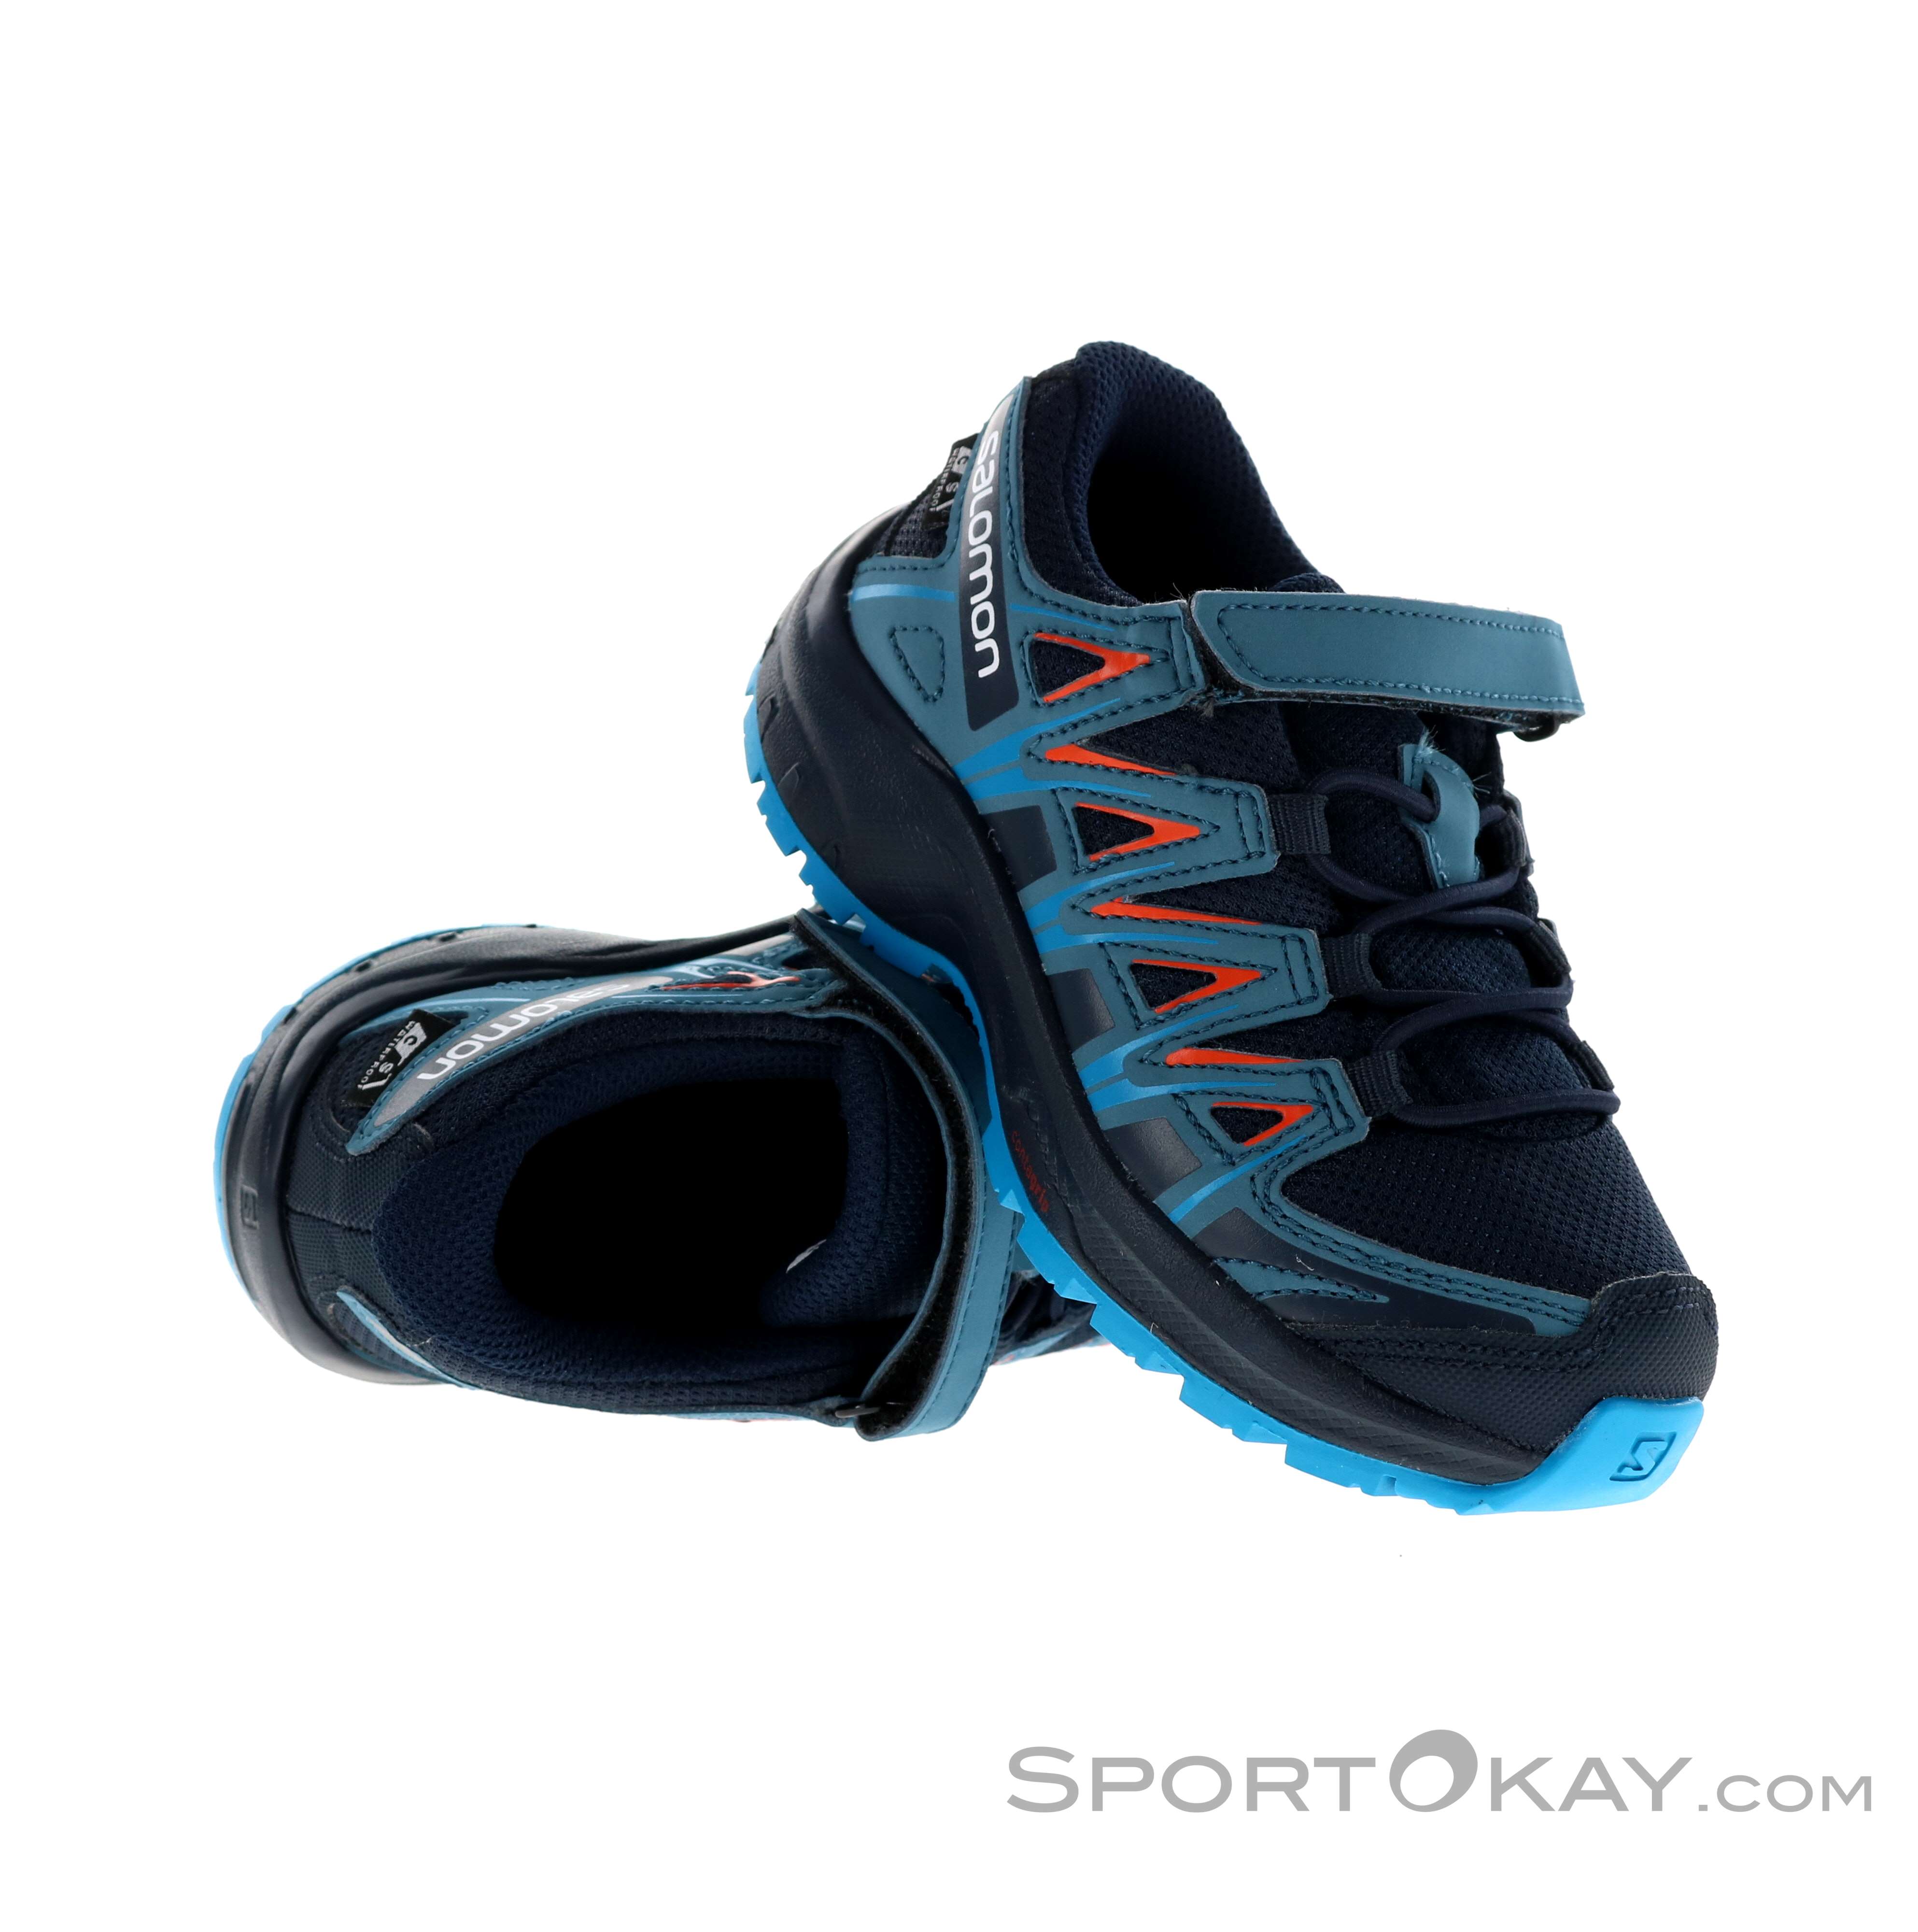 Salomon XA Pro 3D CSSWP Niños Calzado trail running - Calzado de